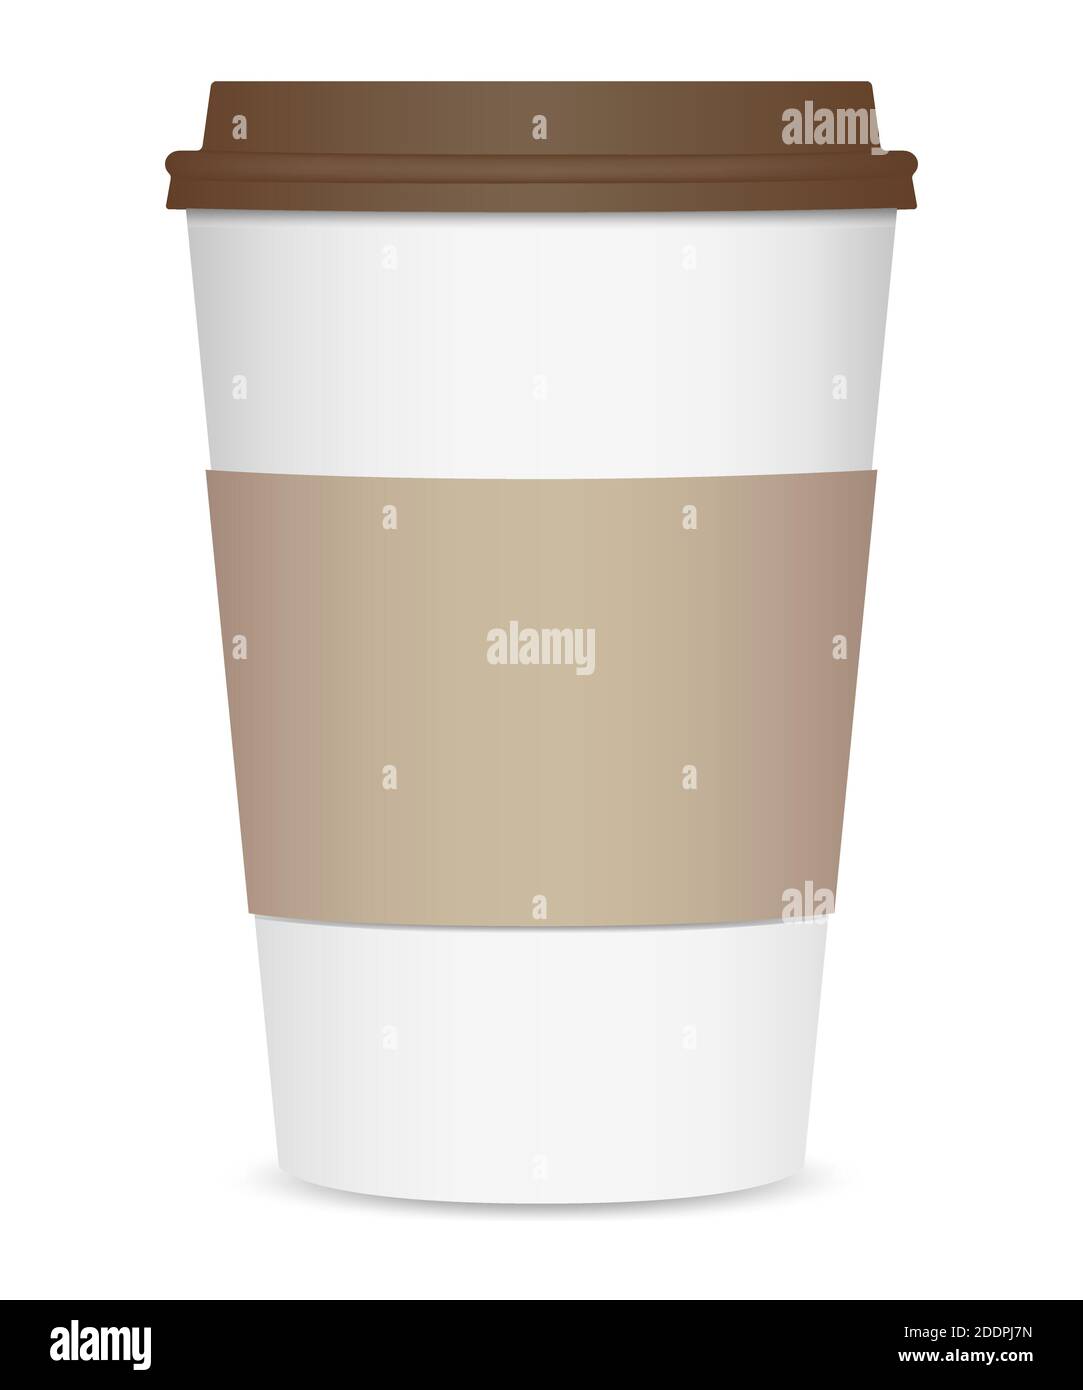 Disposition d'une tasse à café réaliste avec couvercle marron et porte-gobelet. Vue avant. Isolé sur fond blanc. Illustration vectorielle Illustration de Vecteur